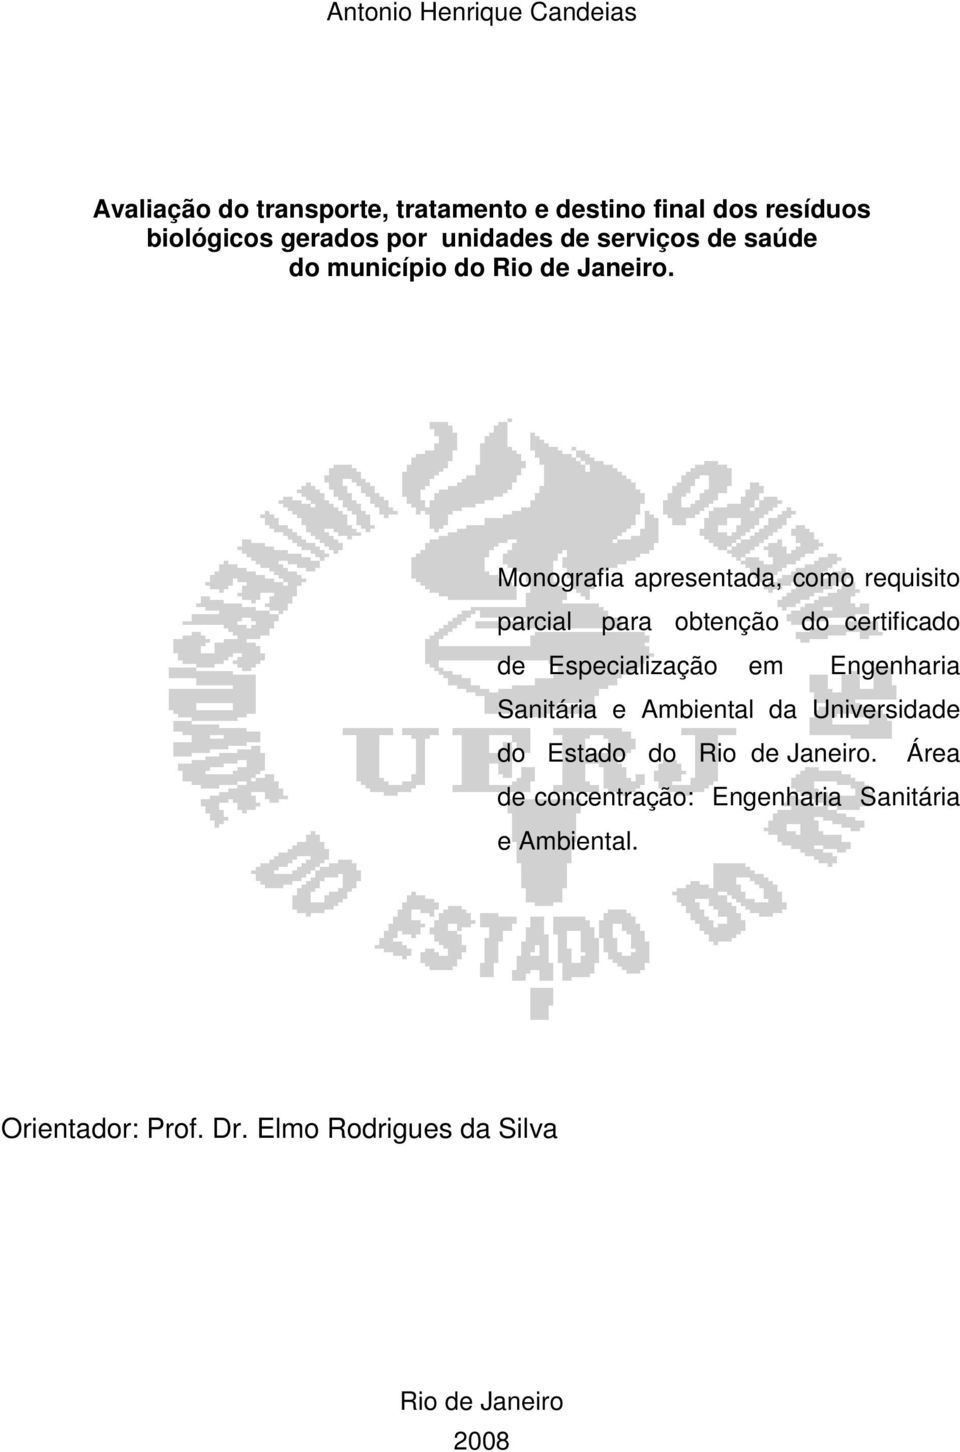 Monografia apresentada, como requisito parcial para obtenção do certificado de Especialização em Engenharia Sanitária